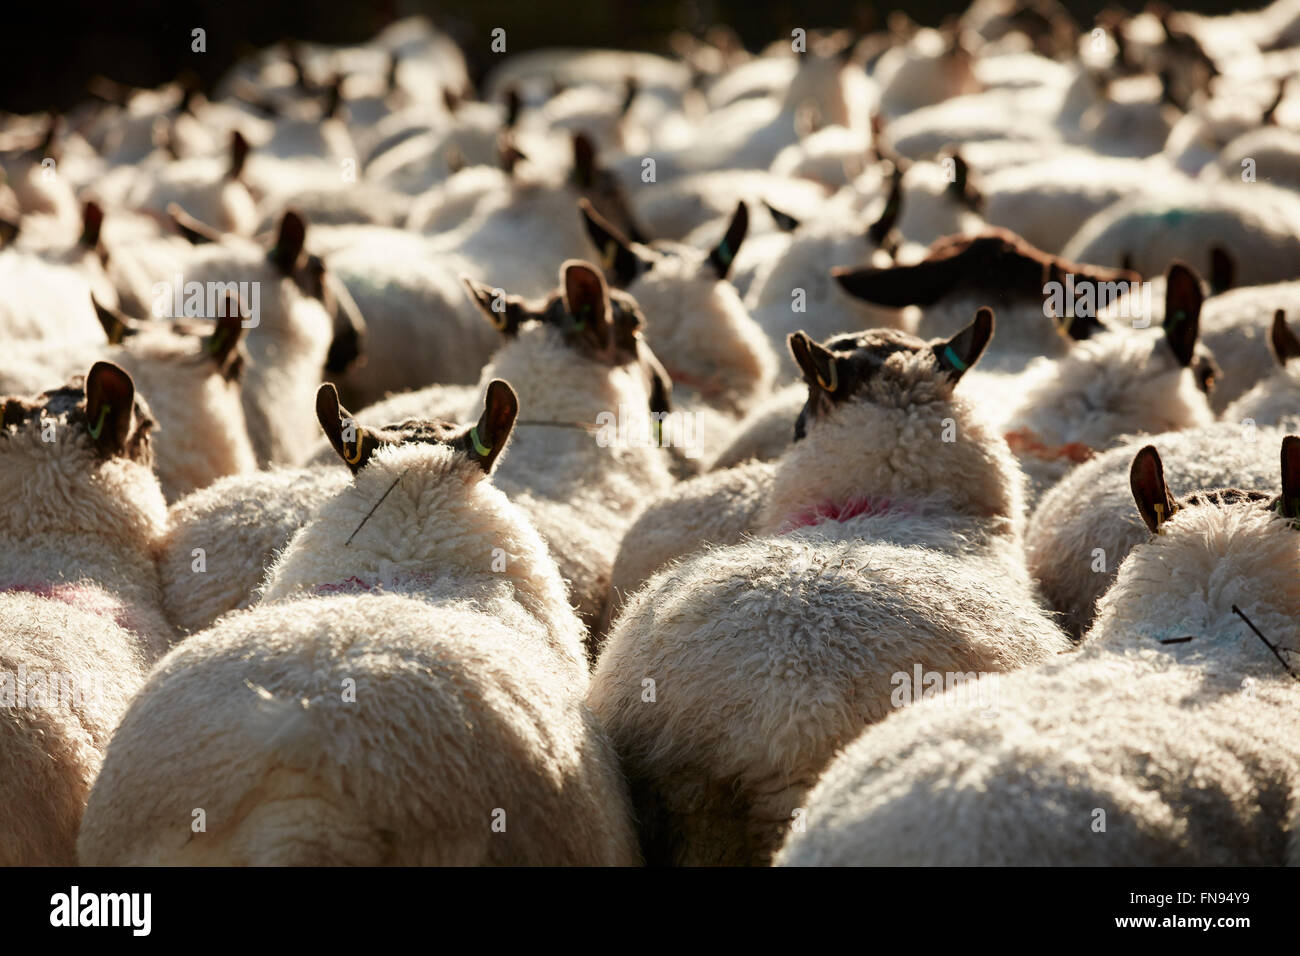 Eine Herde von Schafen mit breiten Rücken und Dicke Vliese, zusammen getrieben. Stockfoto